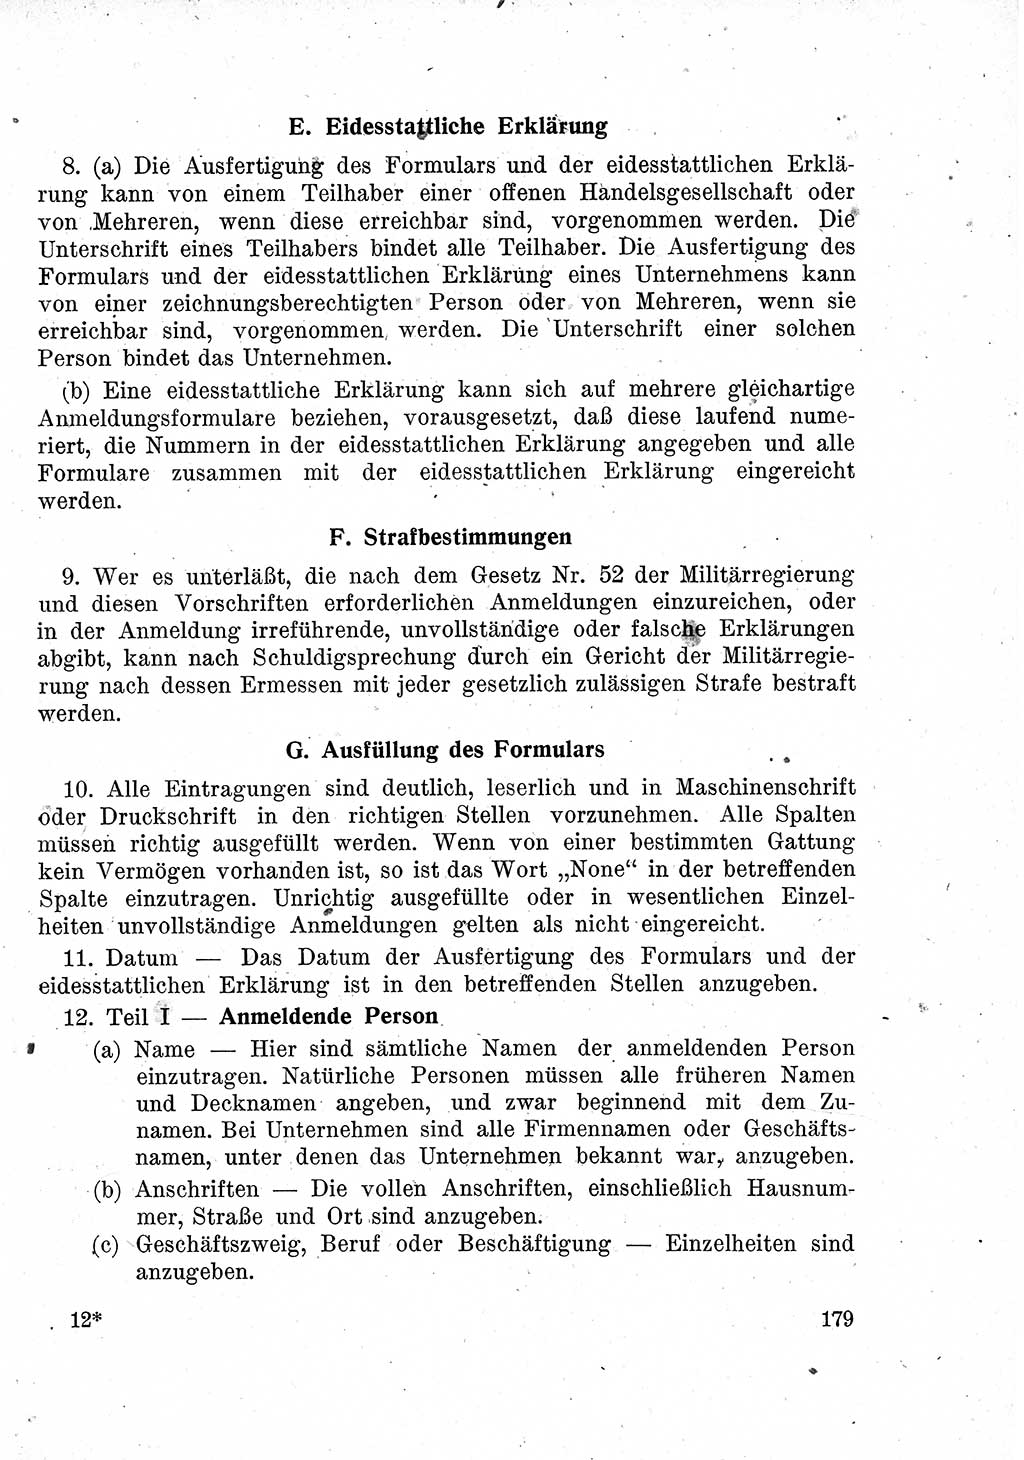 Das Recht der Besatzungsmacht (Deutschland), Proklamationen, Deklerationen, Verordnungen, Gesetze und Bekanntmachungen 1947, Seite 179 (R. Bes. Dtl. 1947, S. 179)